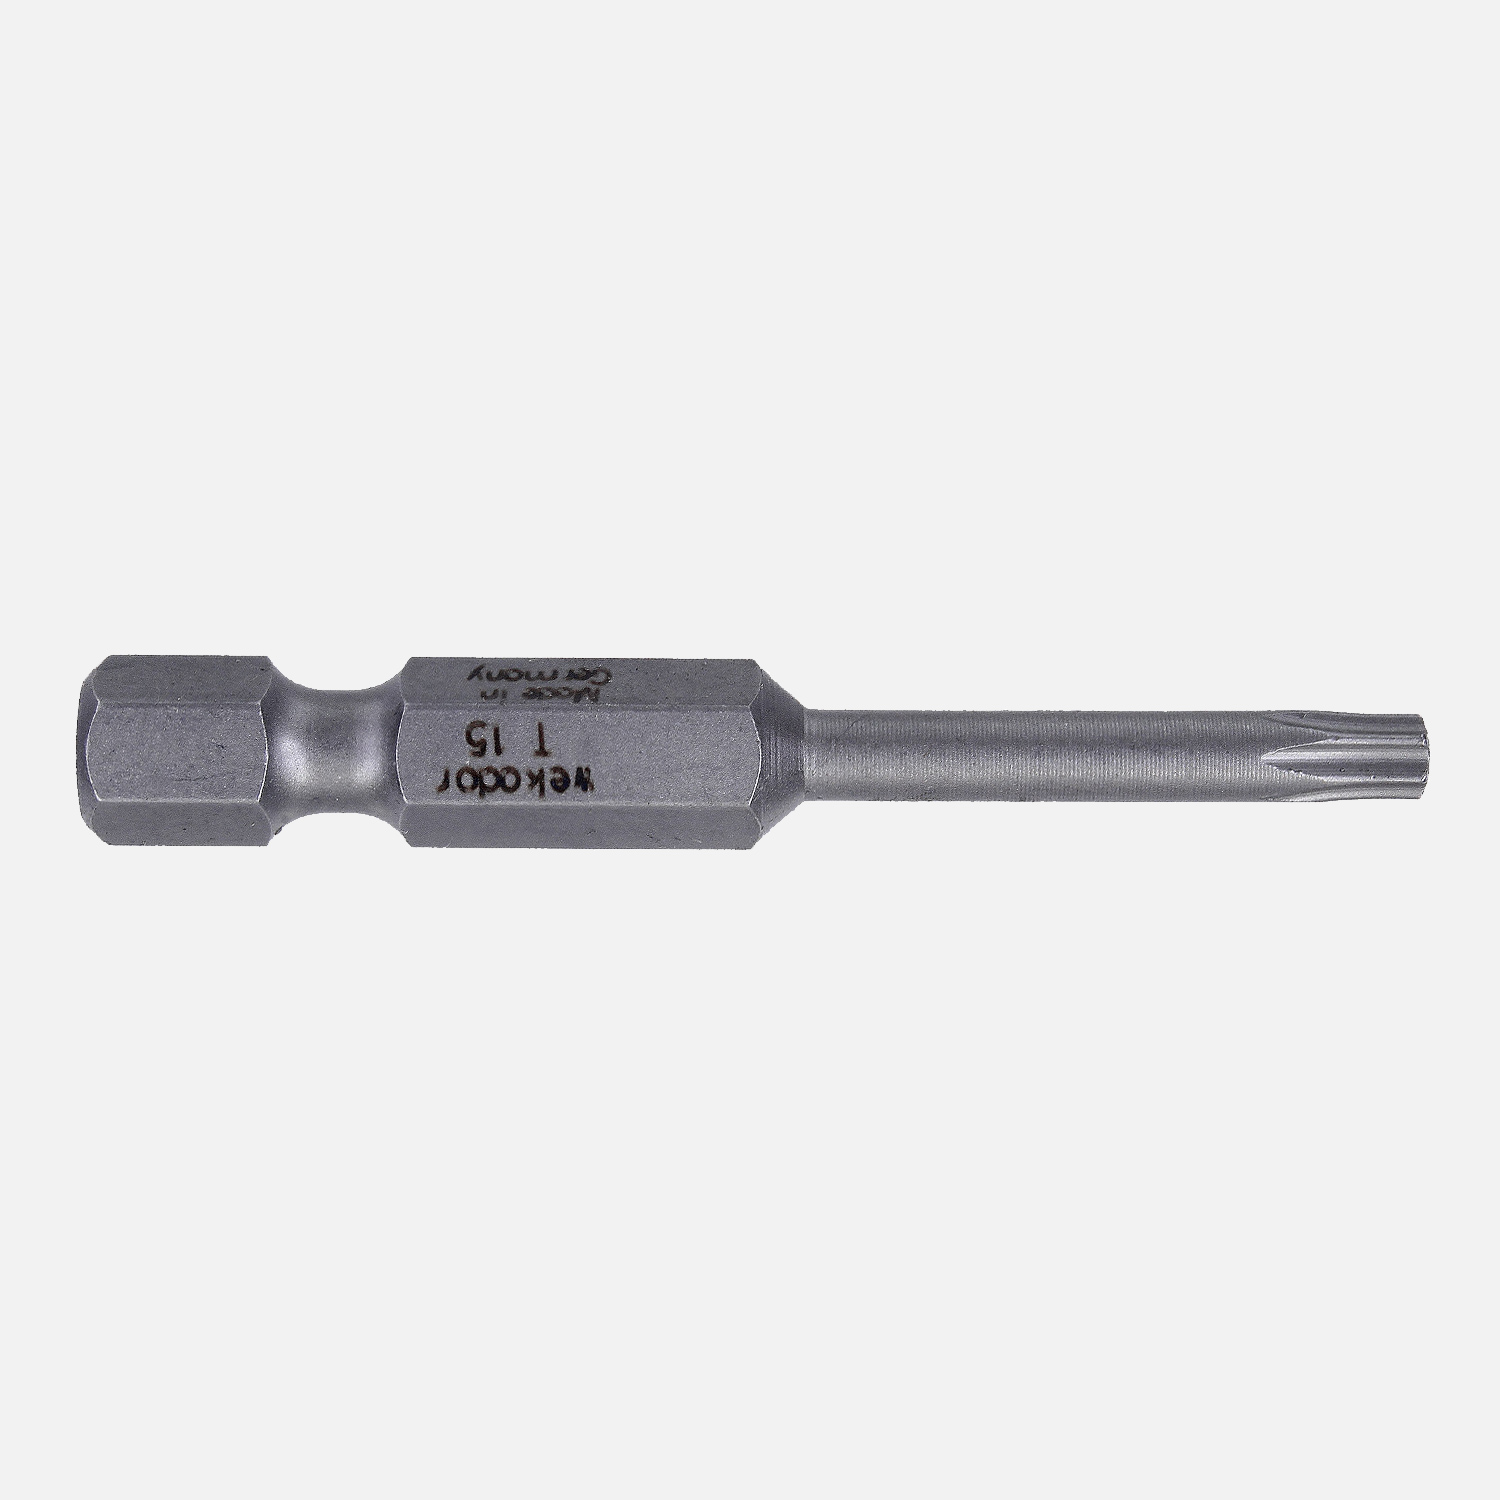 1 Torx Bit TX15 - 50mm Länge - 1/4" Antrieb - Industriequalität